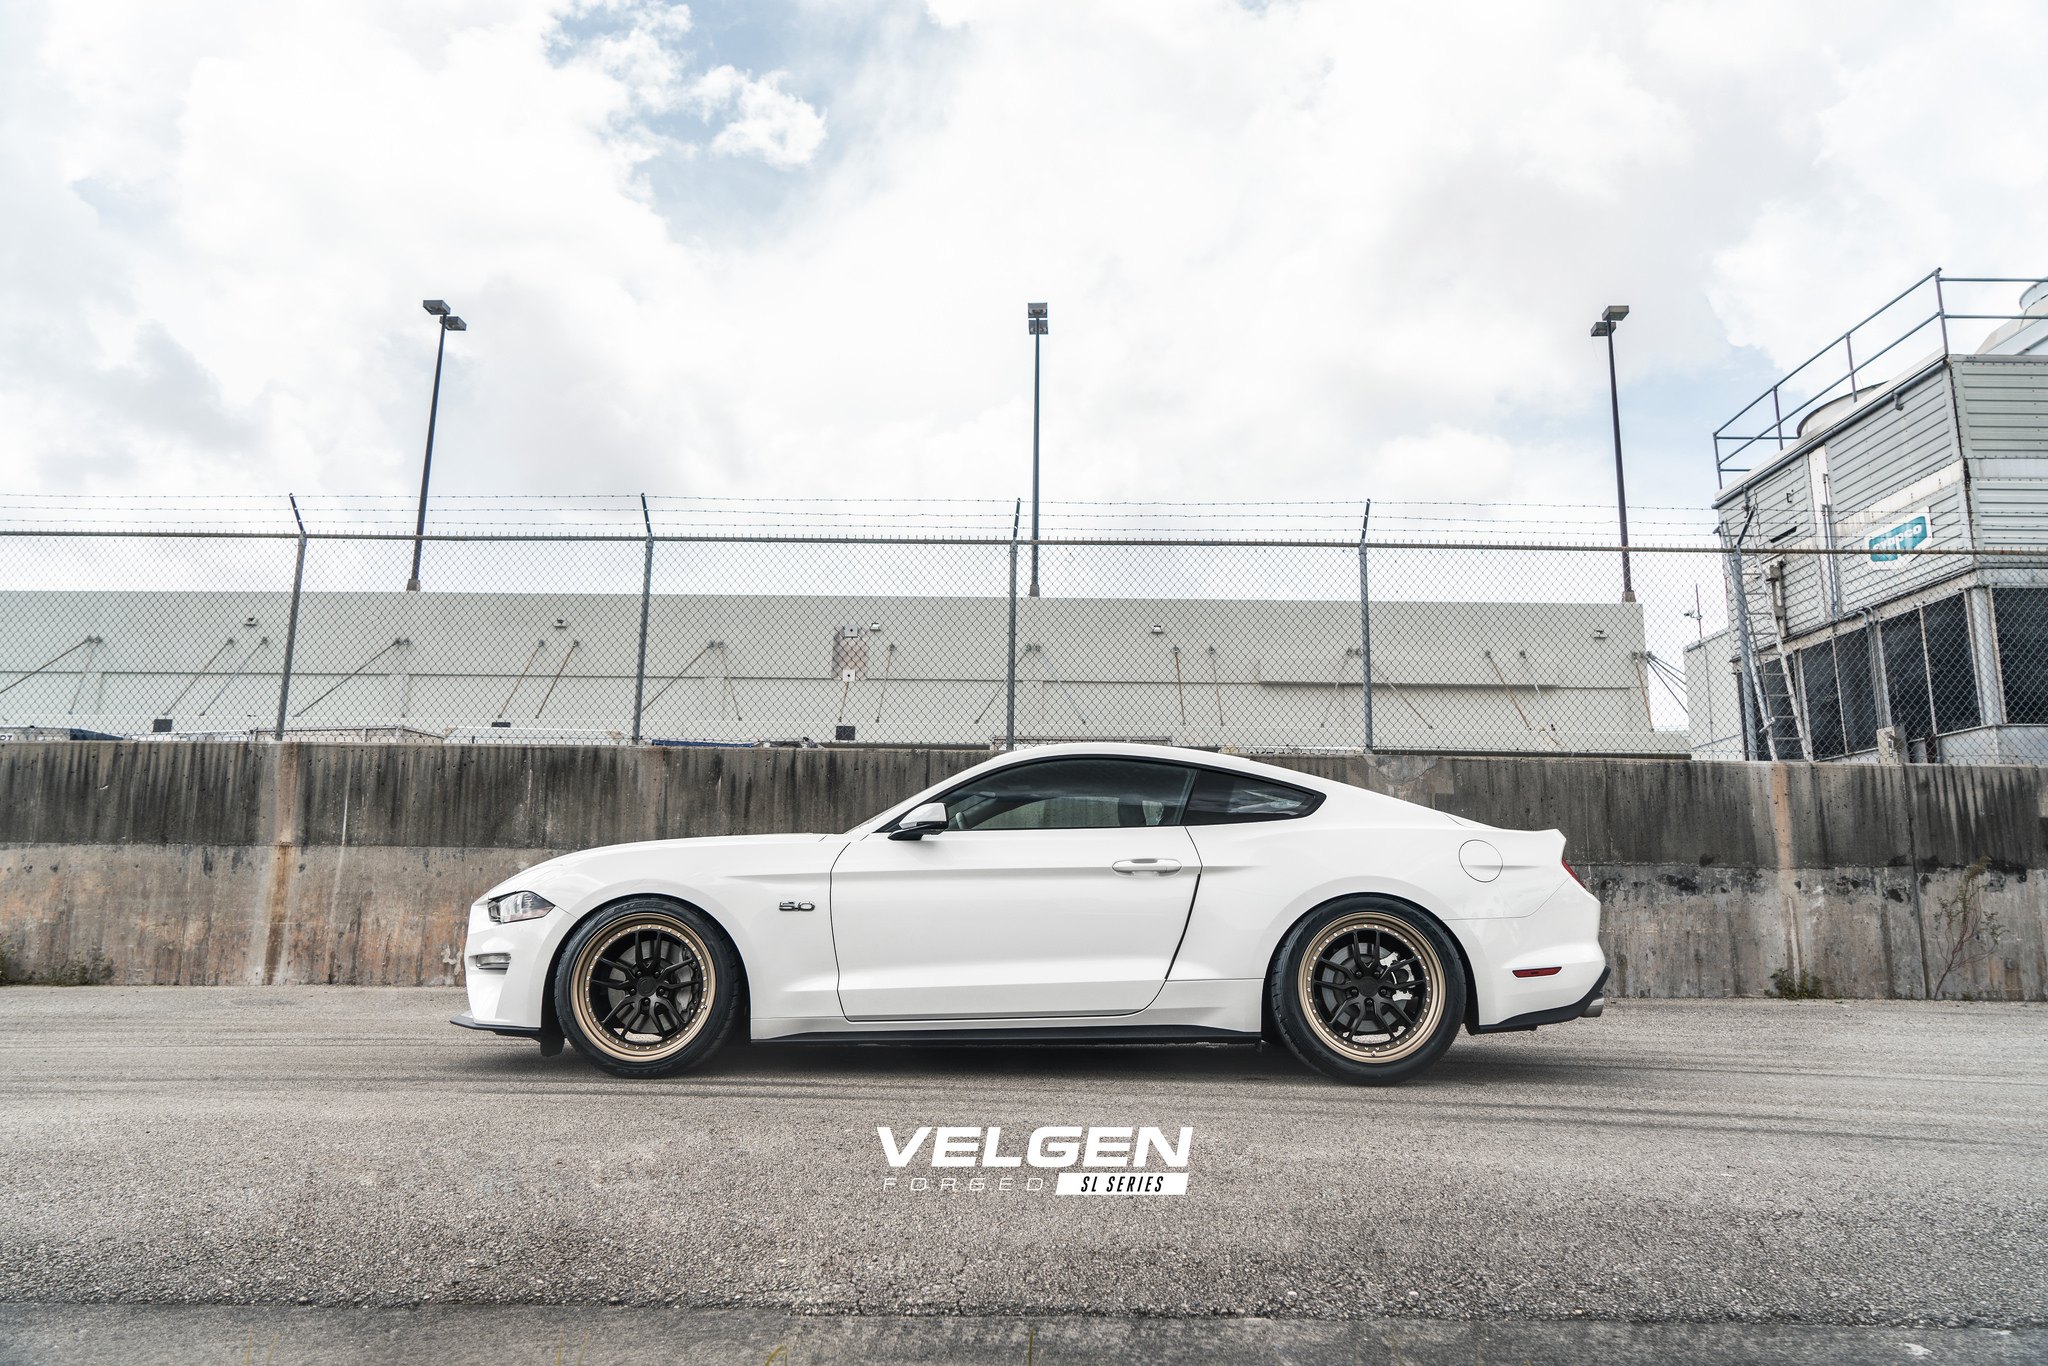 Velgen Forged Rims on White Ford Mustang GT - Photo by Velgen Wheels